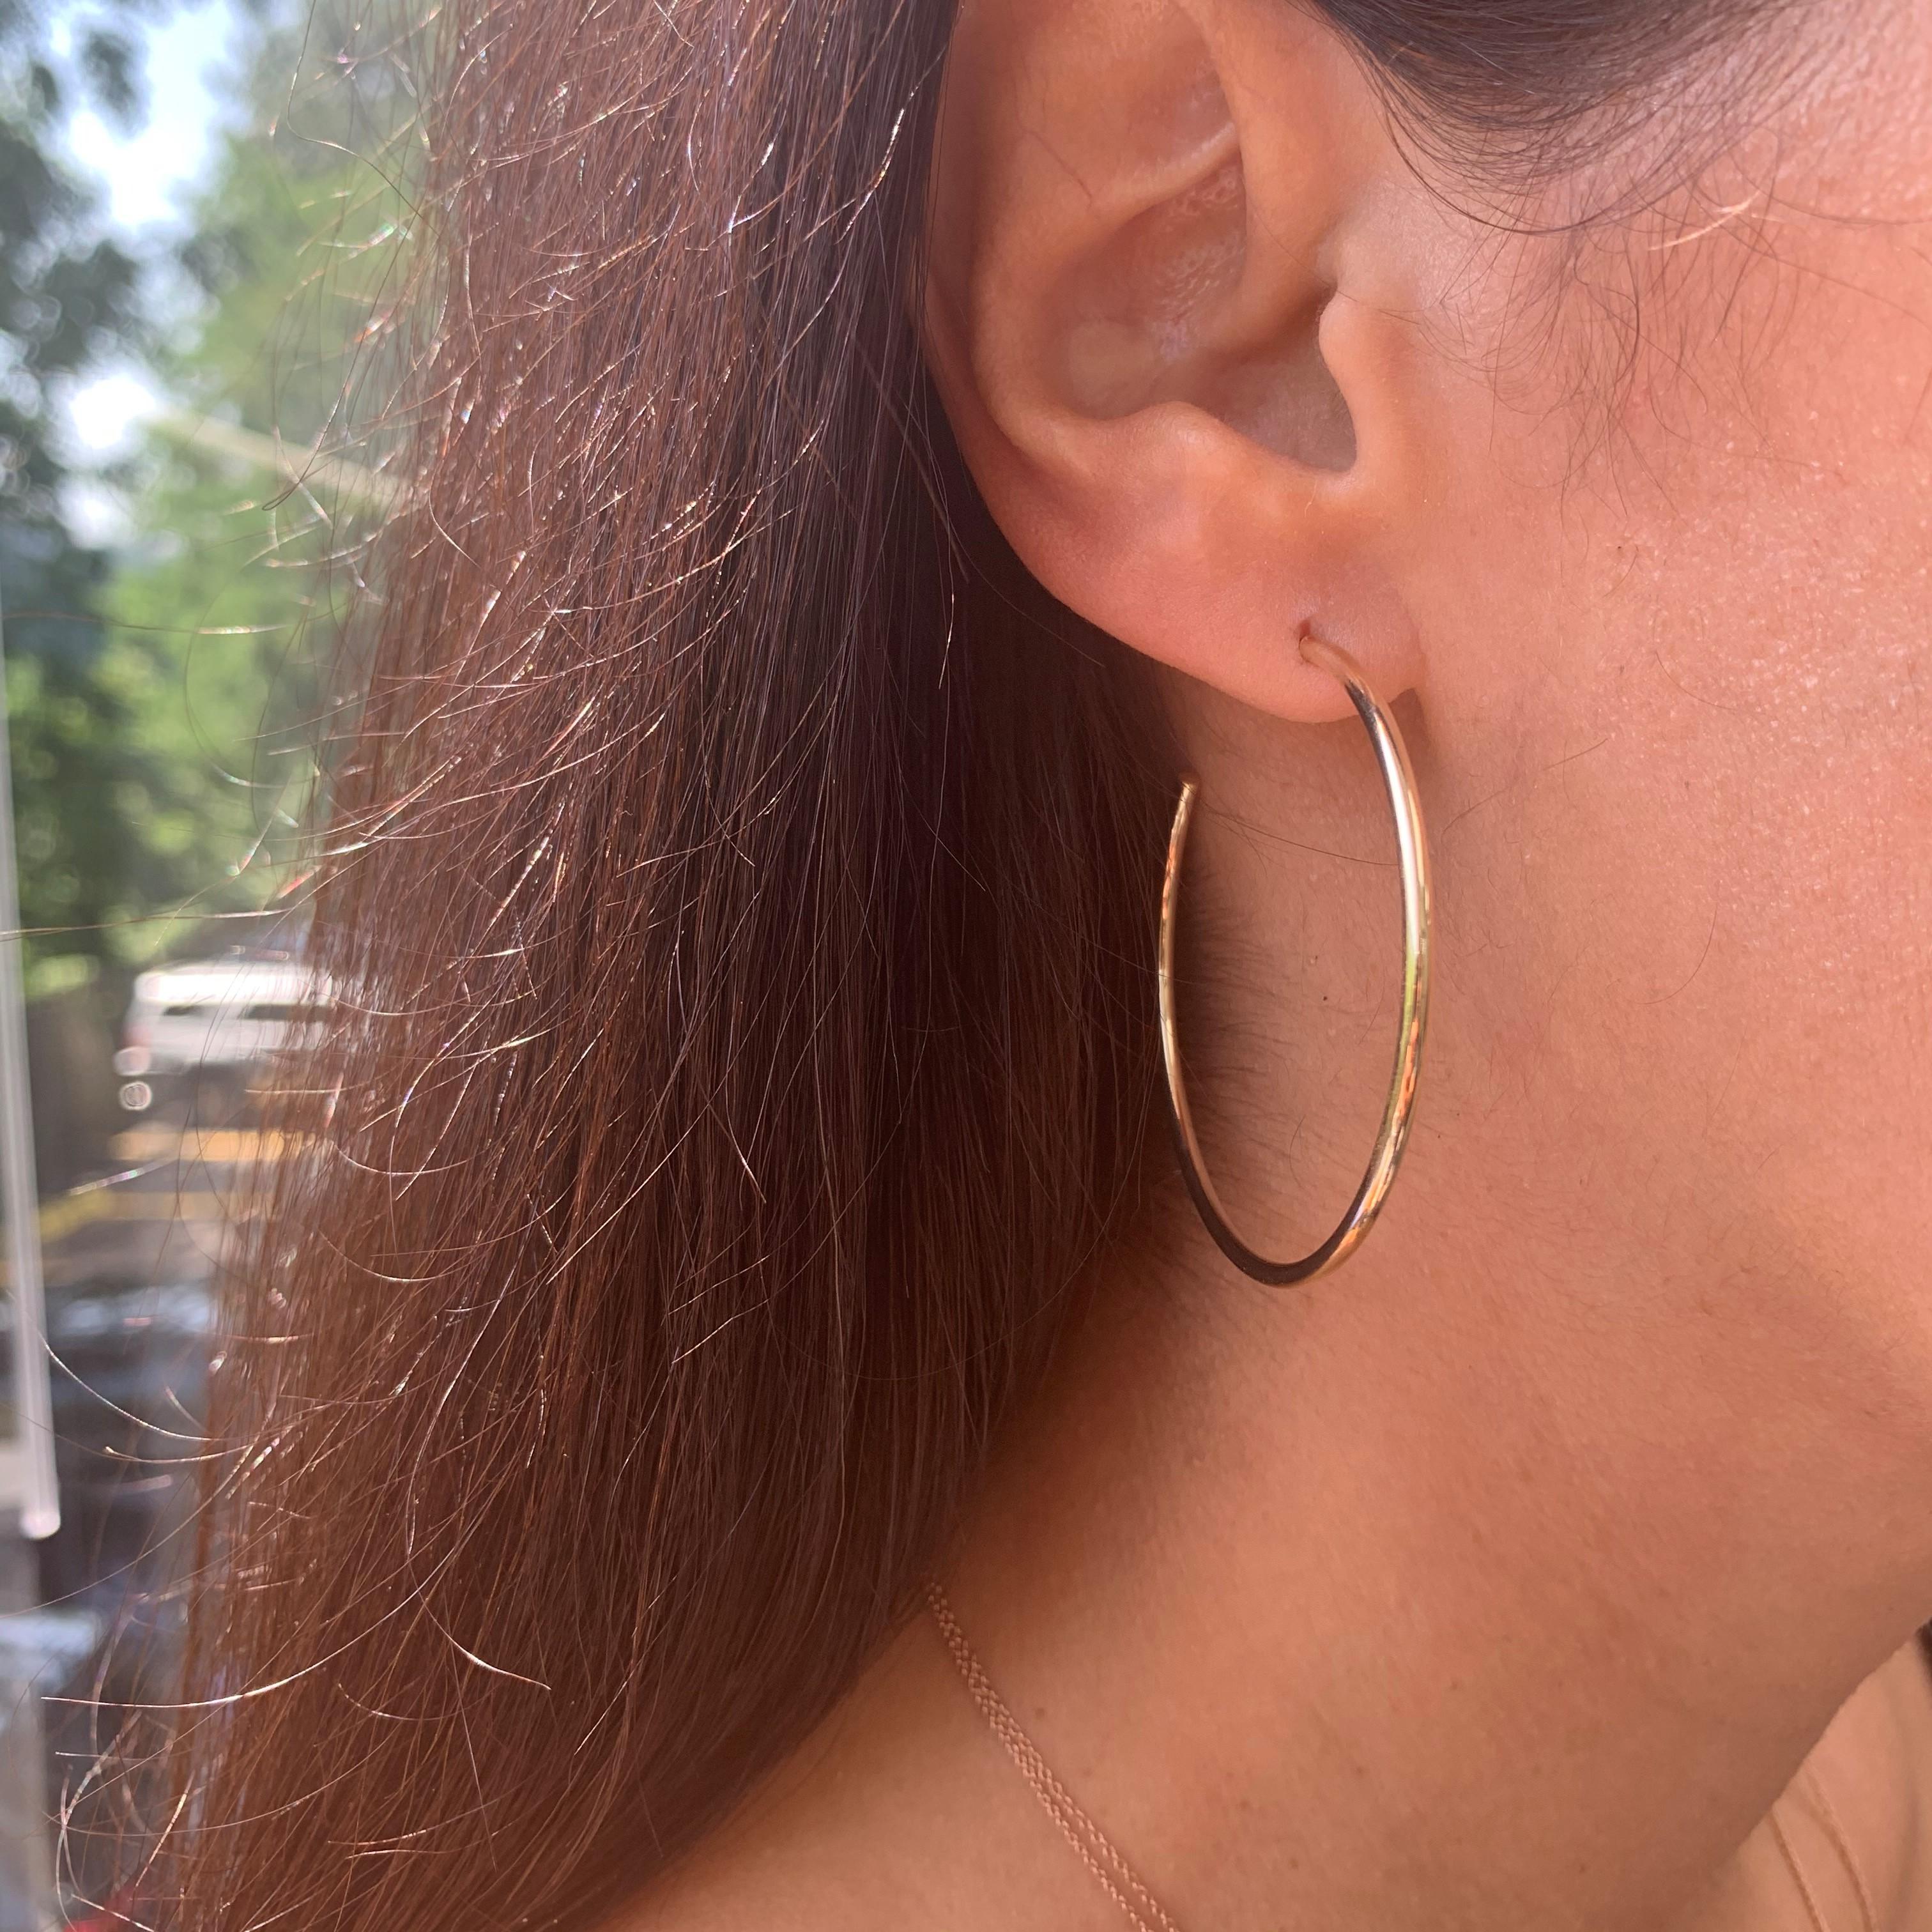 Ces élégants et élégantes boucles d'oreilles en or jaune 14K ajouteront le glamour parfait à votre look ! Les mesures des boucles d'oreilles sont 2 X 55 MM.  
Fabriqué en Italie 
55mm de diamètre 
Boîte cadeau incluse ! 
Expédition en 1-2 jours